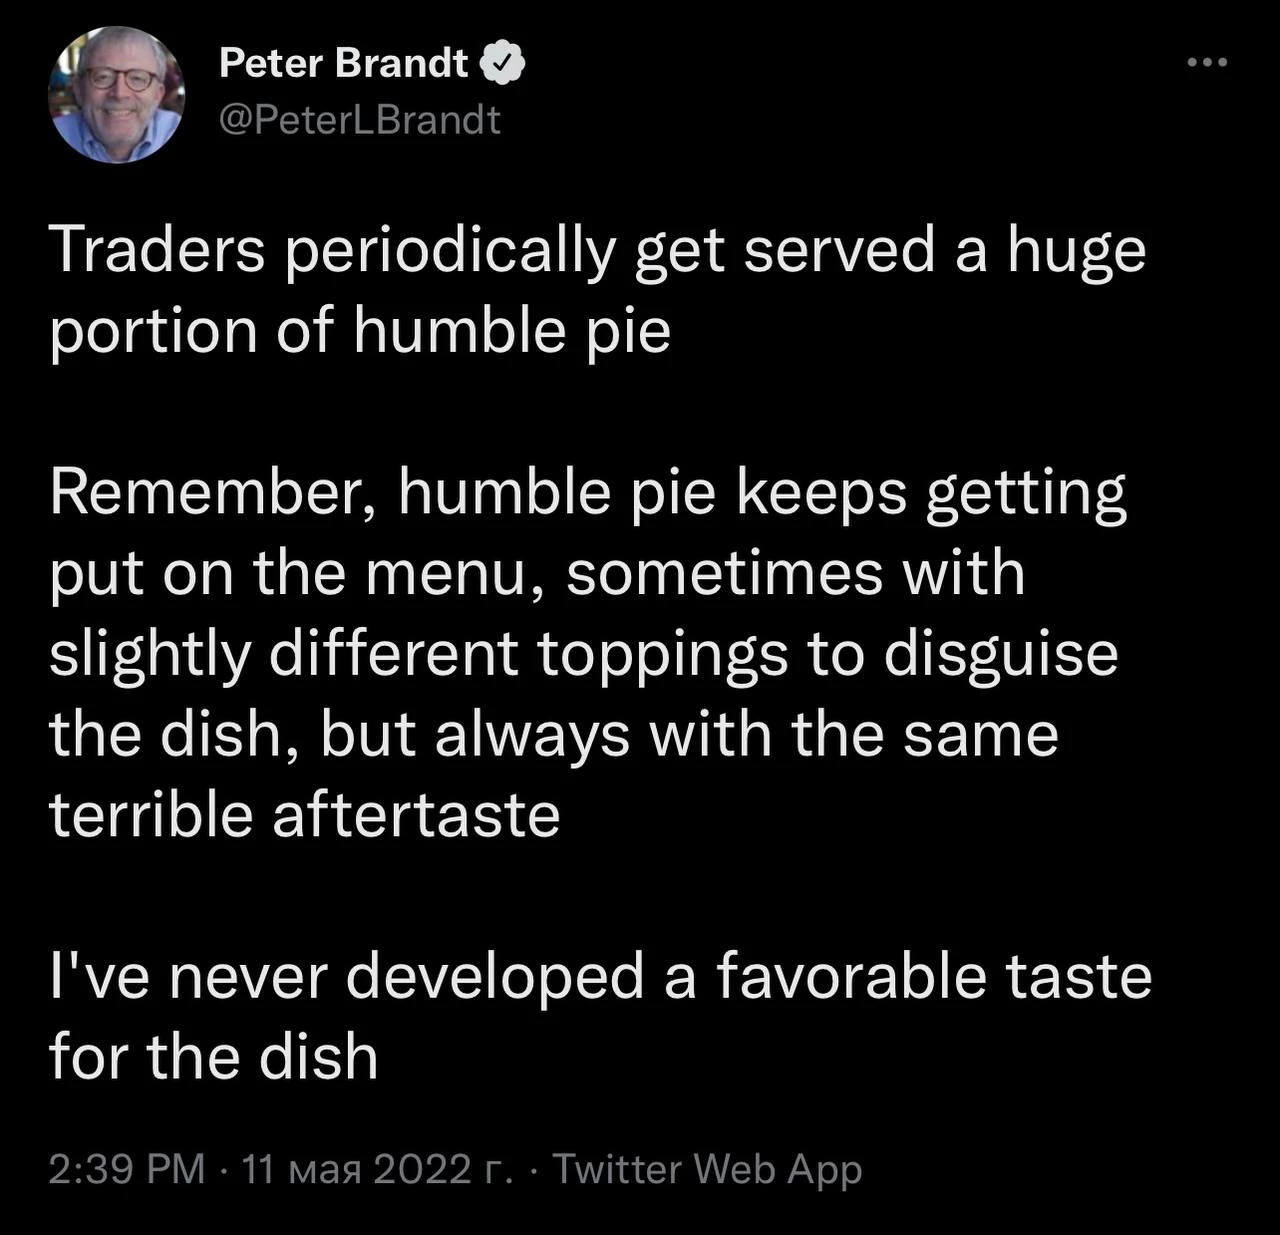 Пост из Твиттера Питера Брандта